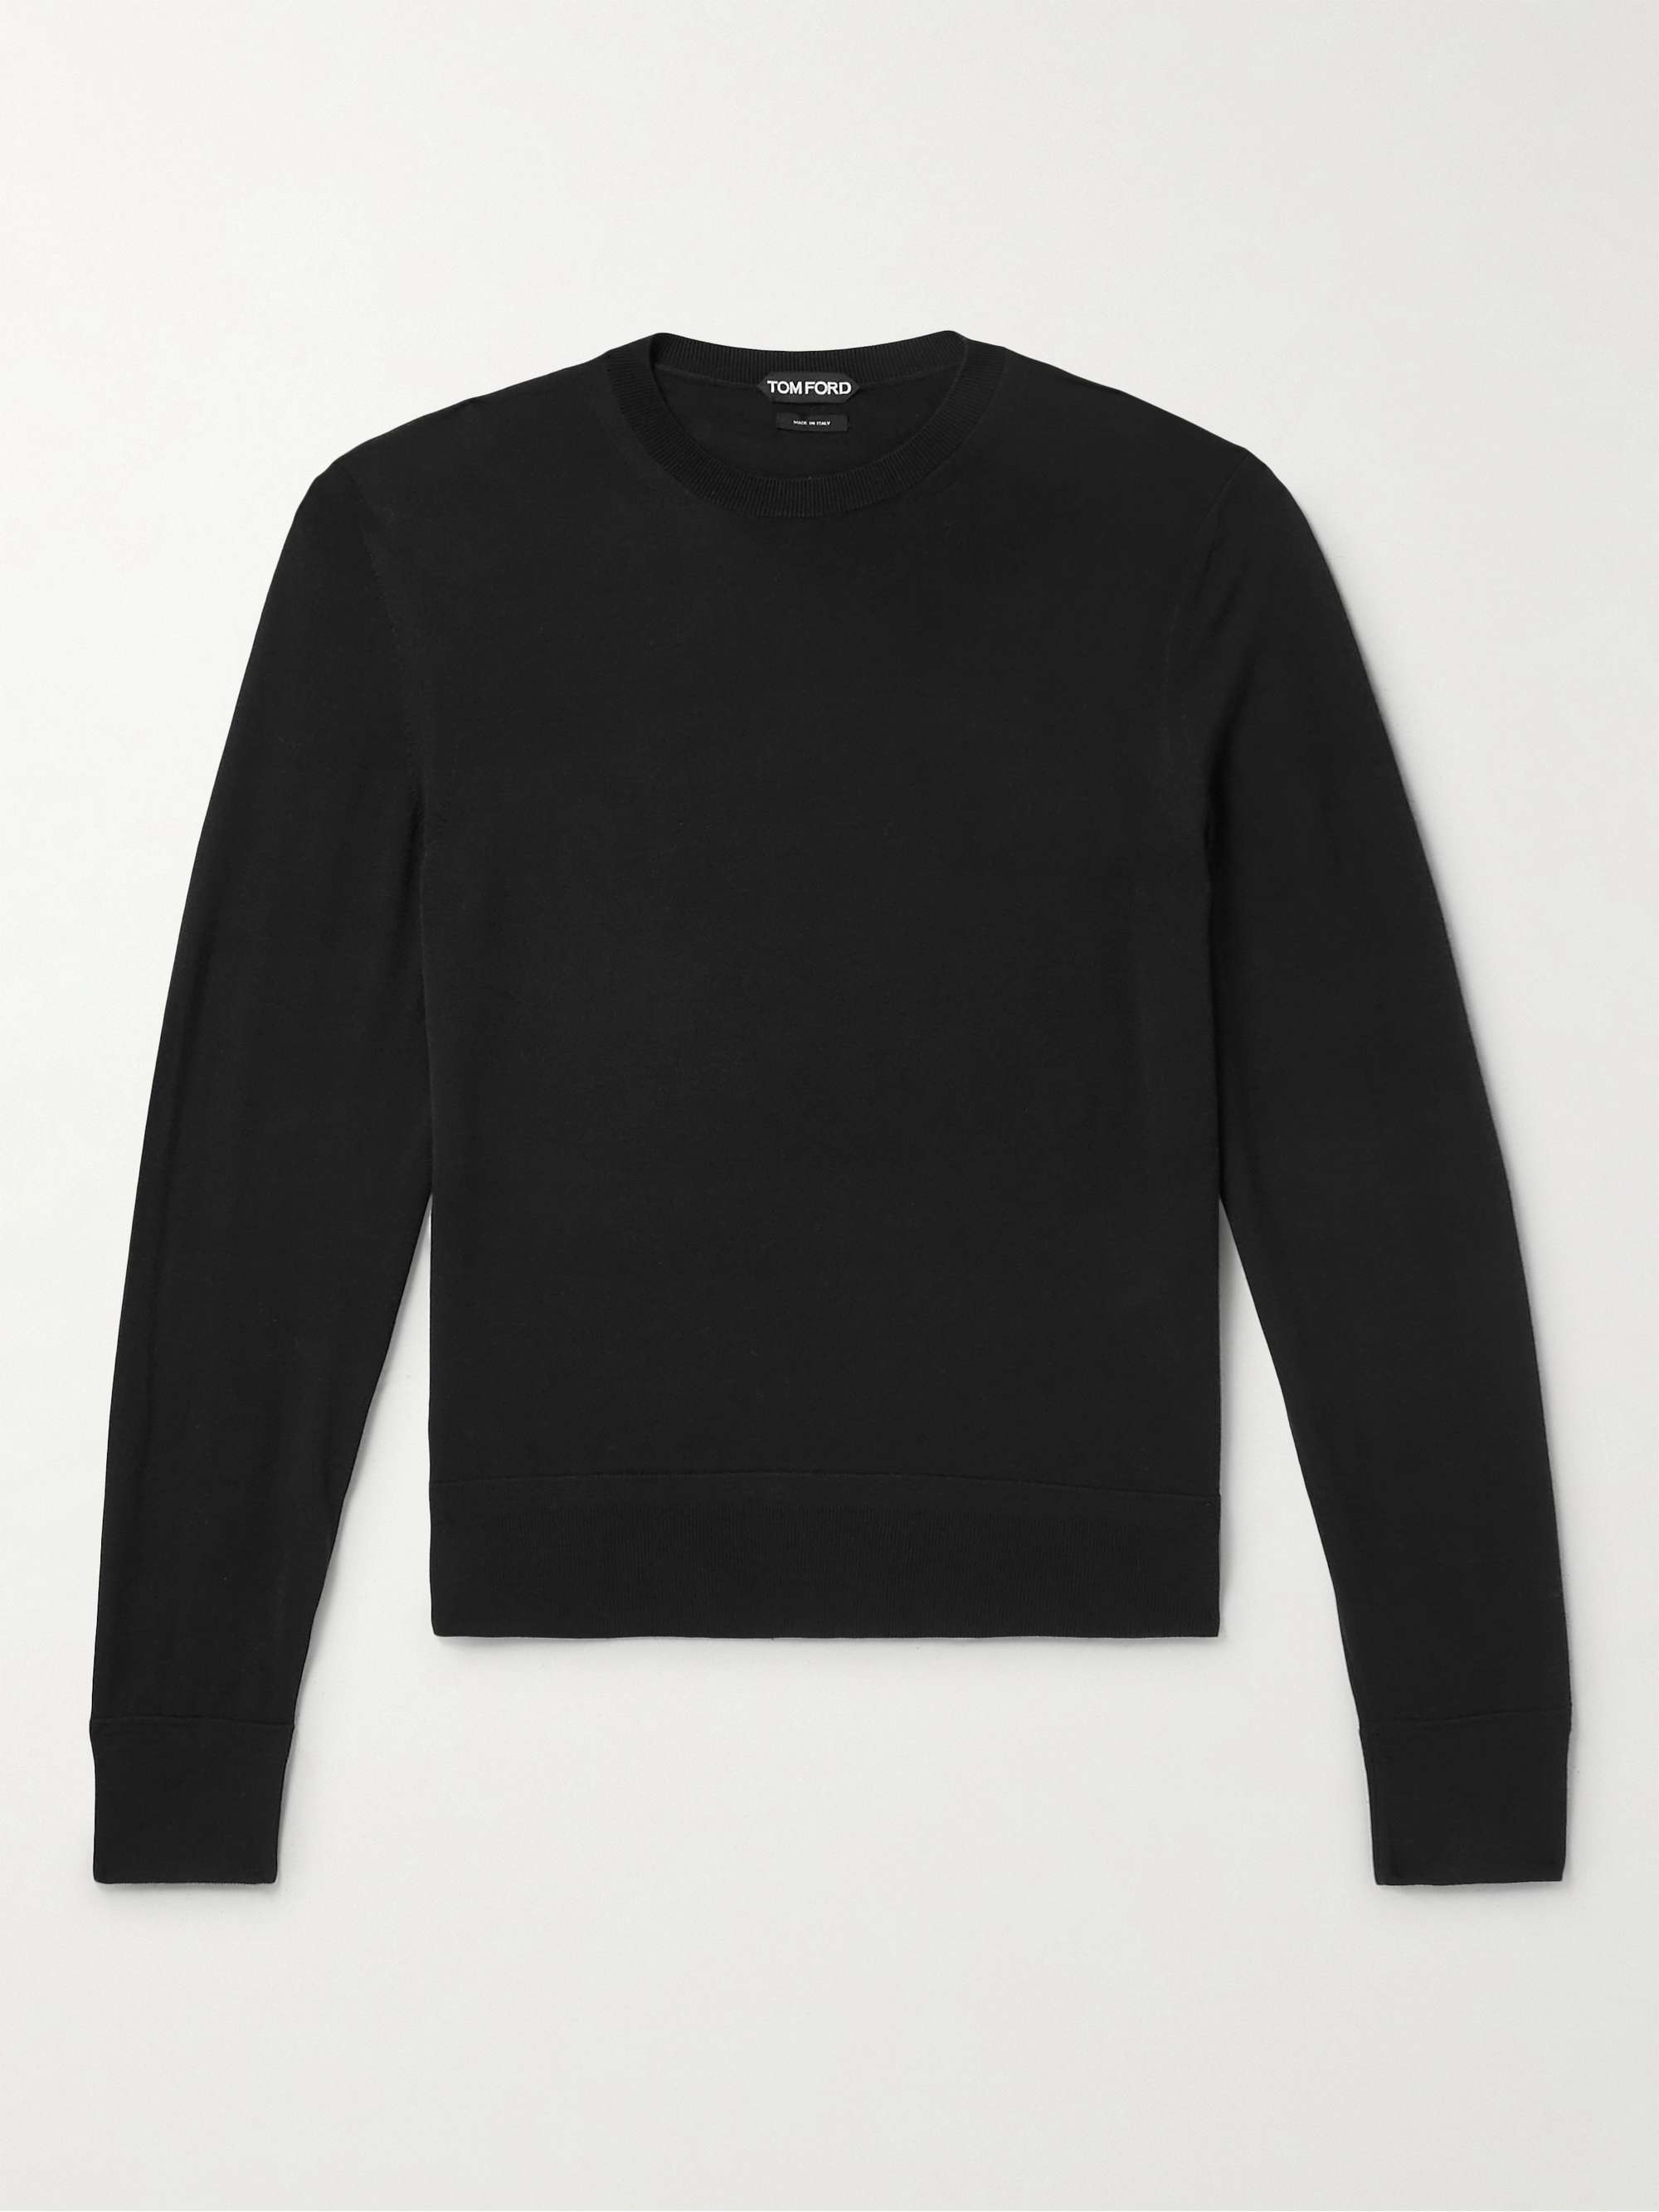 TOM FORD Merino Wool Sweater for Men | MR PORTER